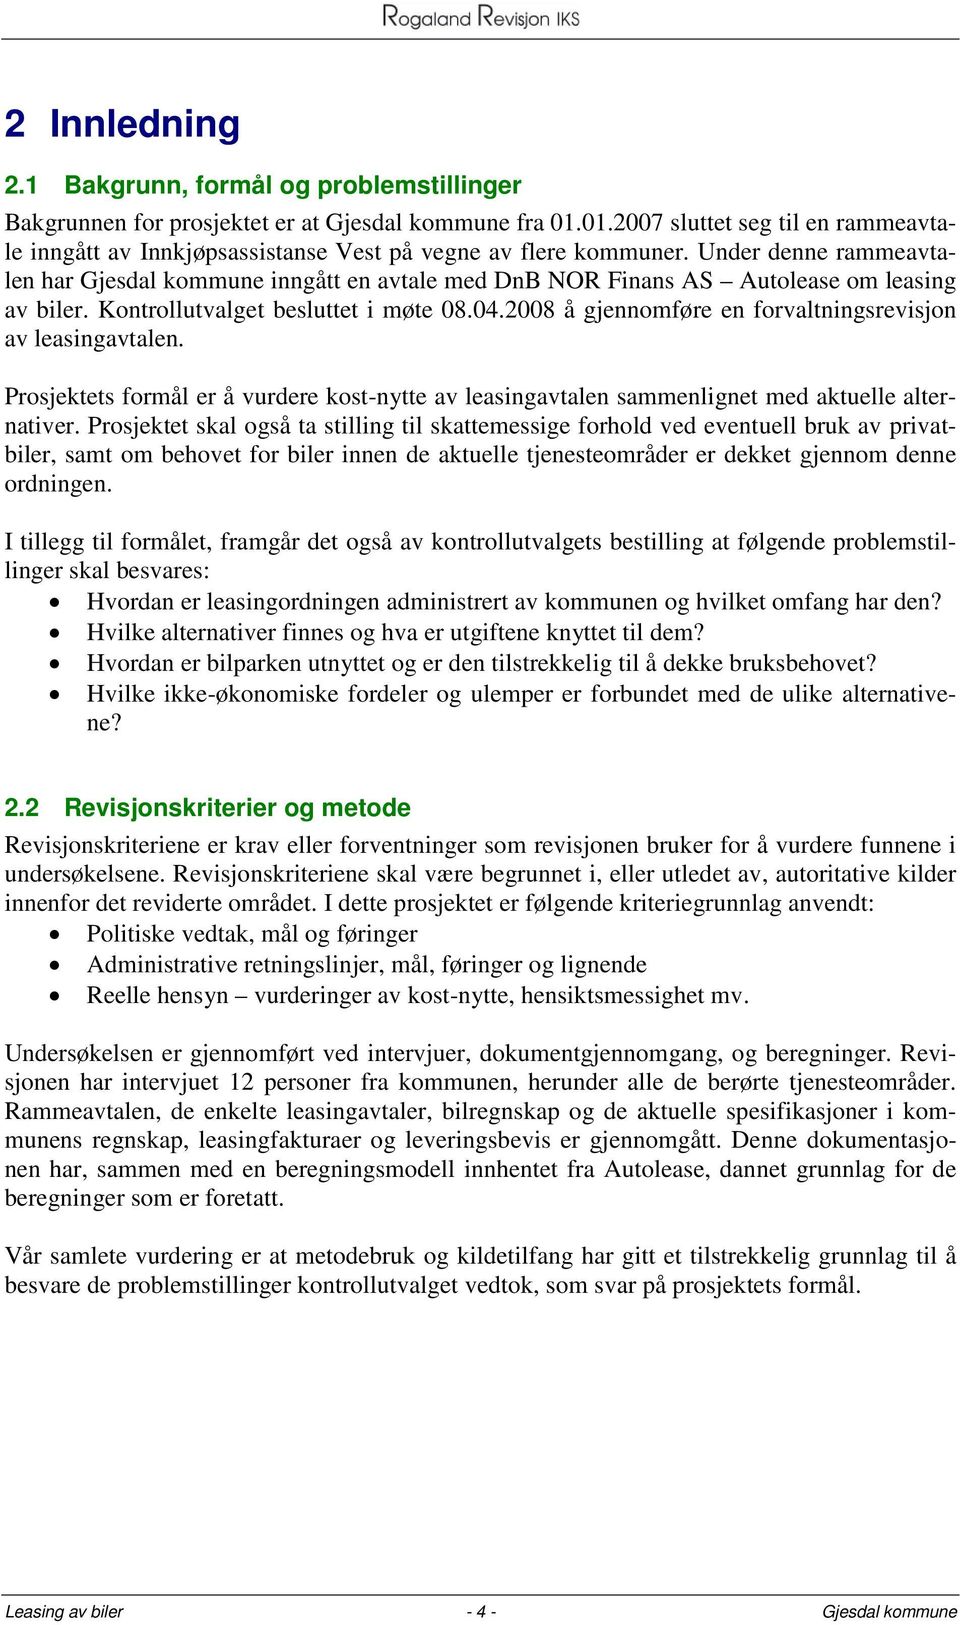 Under denne rammeavtalen har Gjesdal kommune inngått en avtale med DnB NOR Finans AS Autolease om leasing av biler. Kontrollutvalget besluttet i møte 08.04.